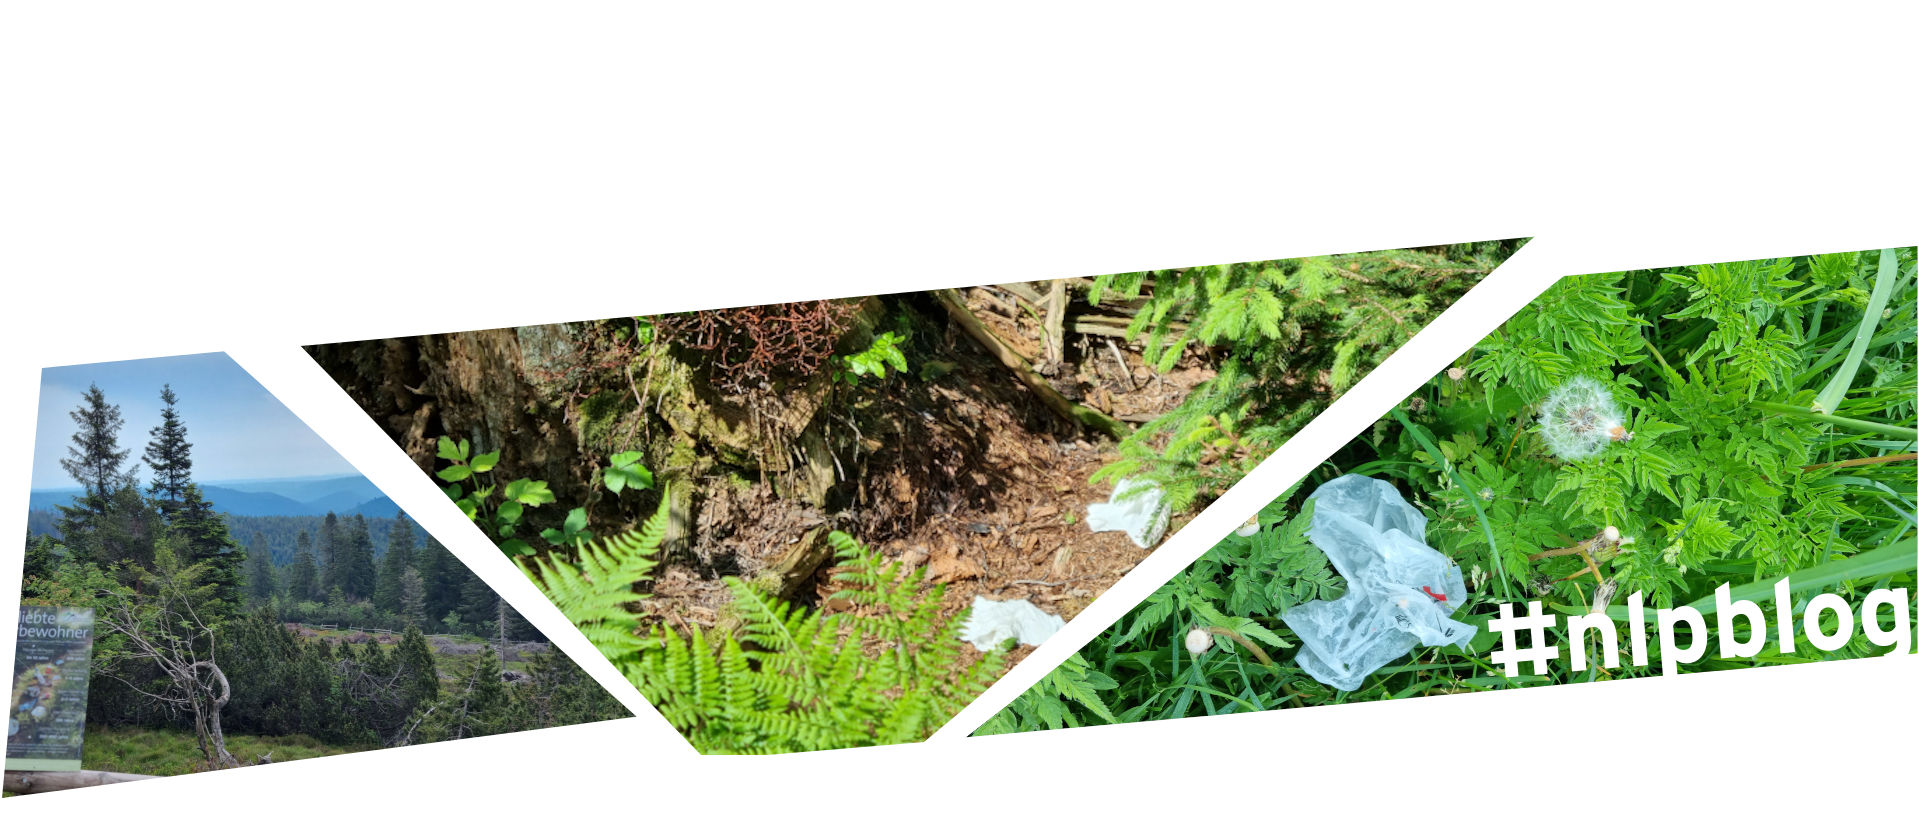 Drei Bilder, die zusammen ein Bildmosaik bilden: Vor einem Naturpanorama mit Nadelwald und sattgrünen Weiden im Vordergrund ein Schild, das auf verschiedene Abfälle hinweist und diese sarkastisch als Arten ausweist, die man im Wald finden kann, wie beispieslweise den weißen Rotzling (auch bekannt als Papiertaschentuch). Das zweite Bild zeigt alte Papiertaschentücher auf dem Waldboden und das dritte Bild eine alte Kunststoffverpackung im Gras.